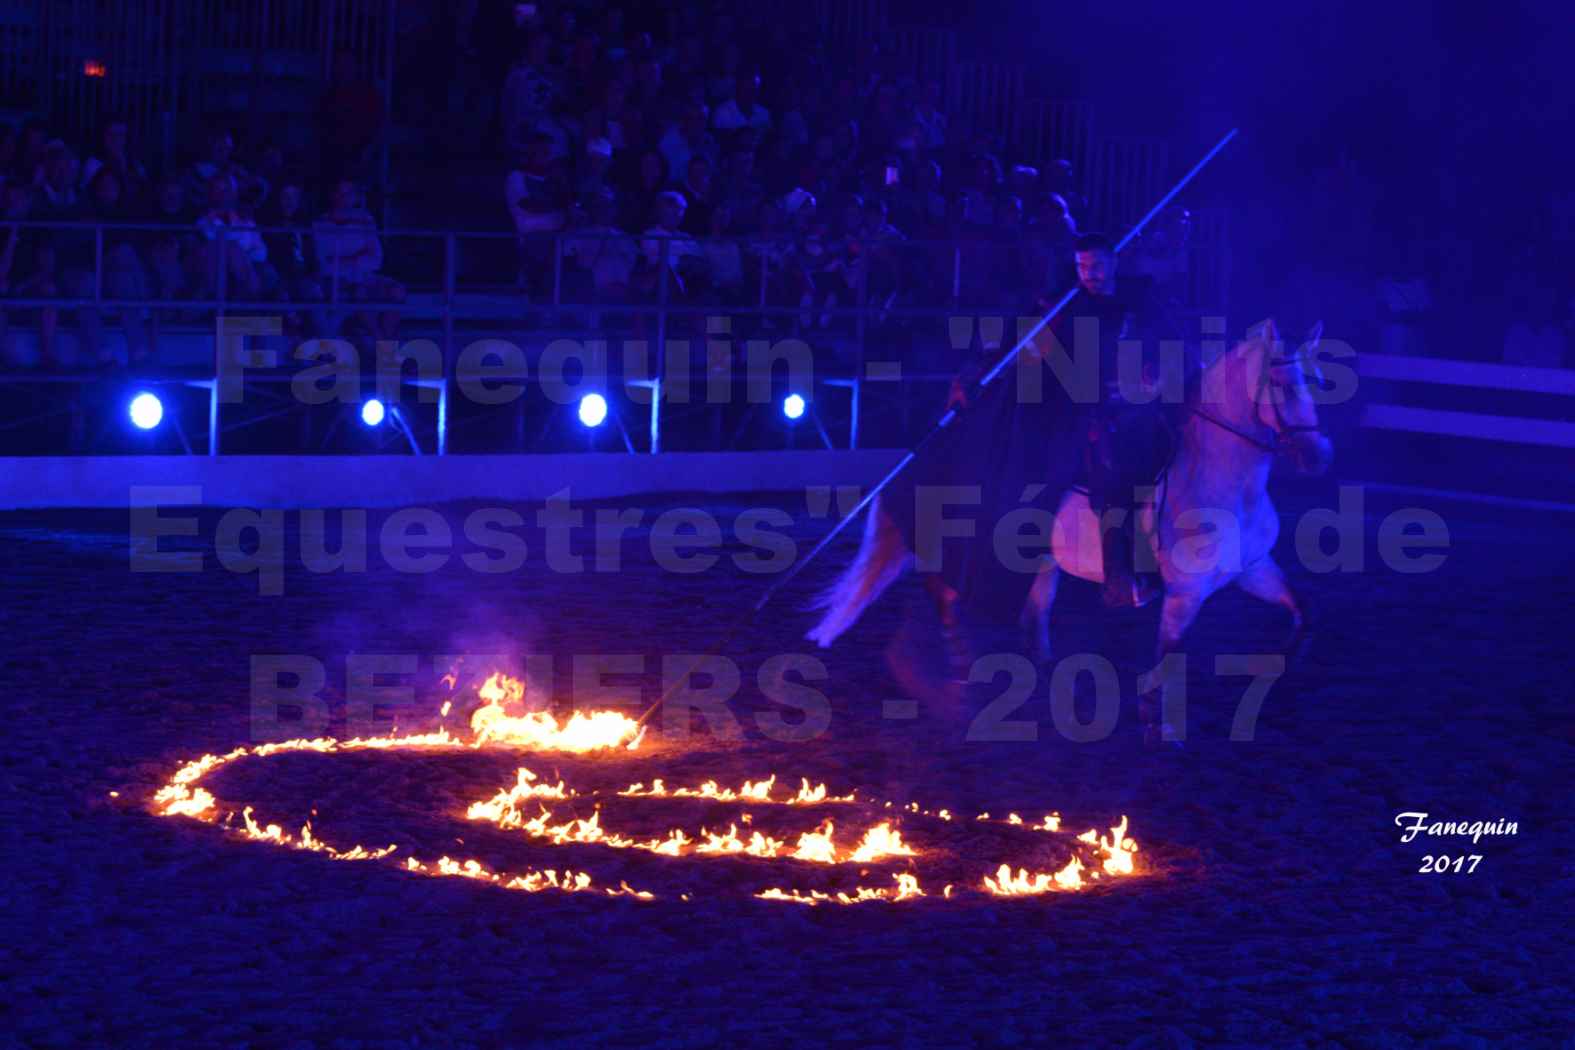 "Nuits Équestres" lors de la Féria de BEZIERS 2017 - Garoche de feu (spirale de feu) - 3